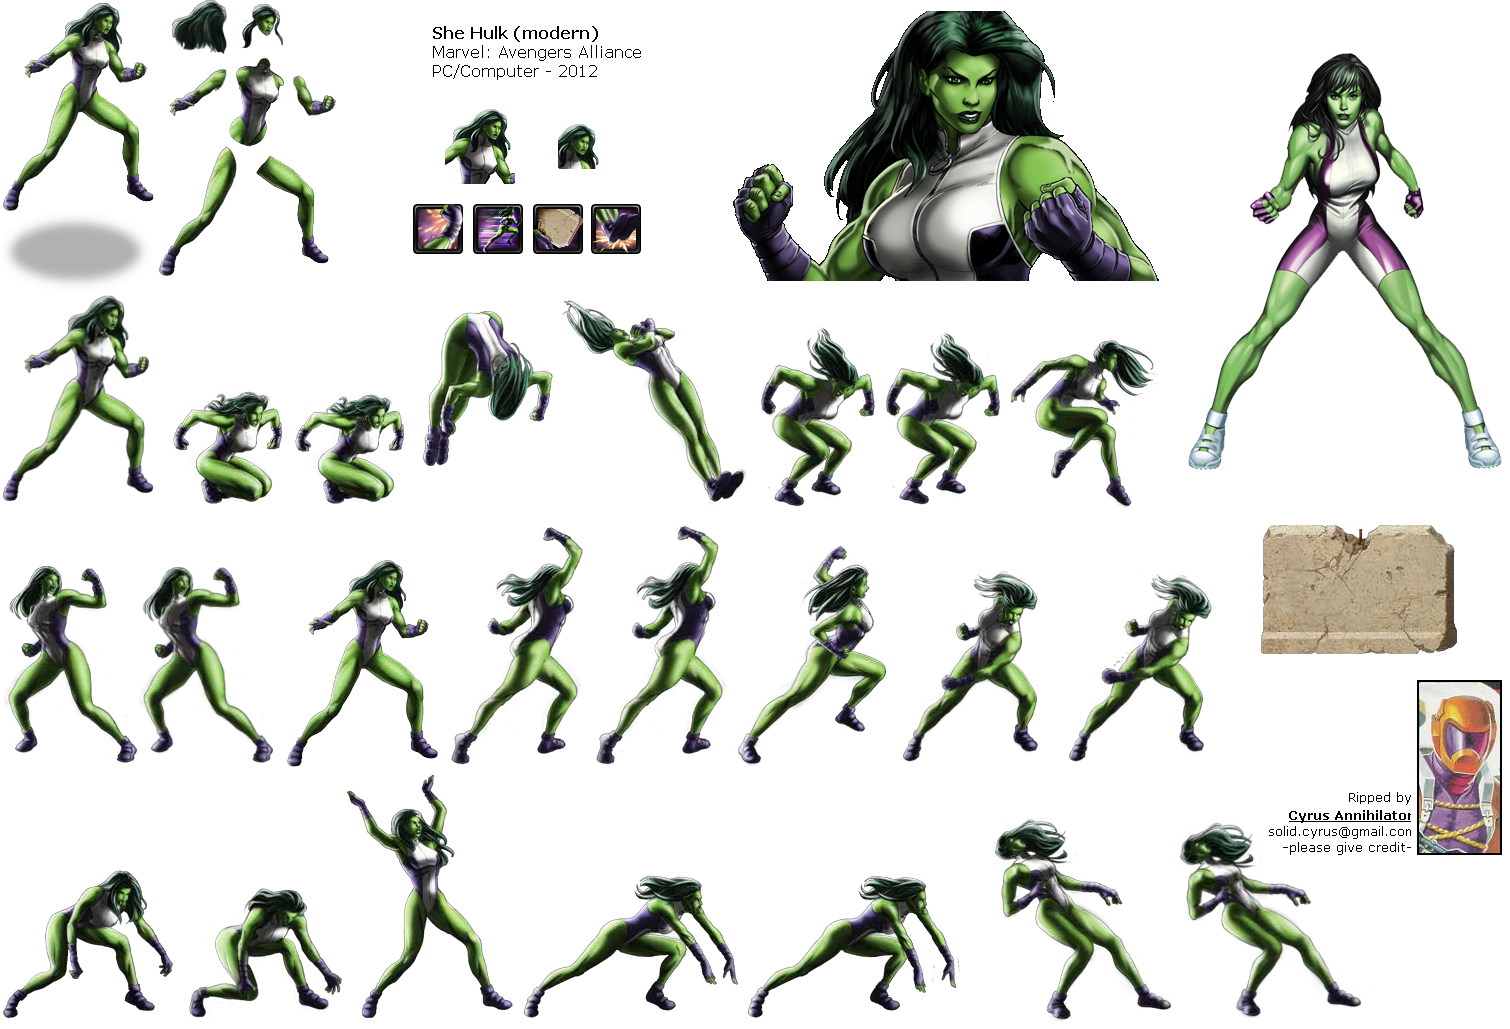 She-Hulk (Modern)